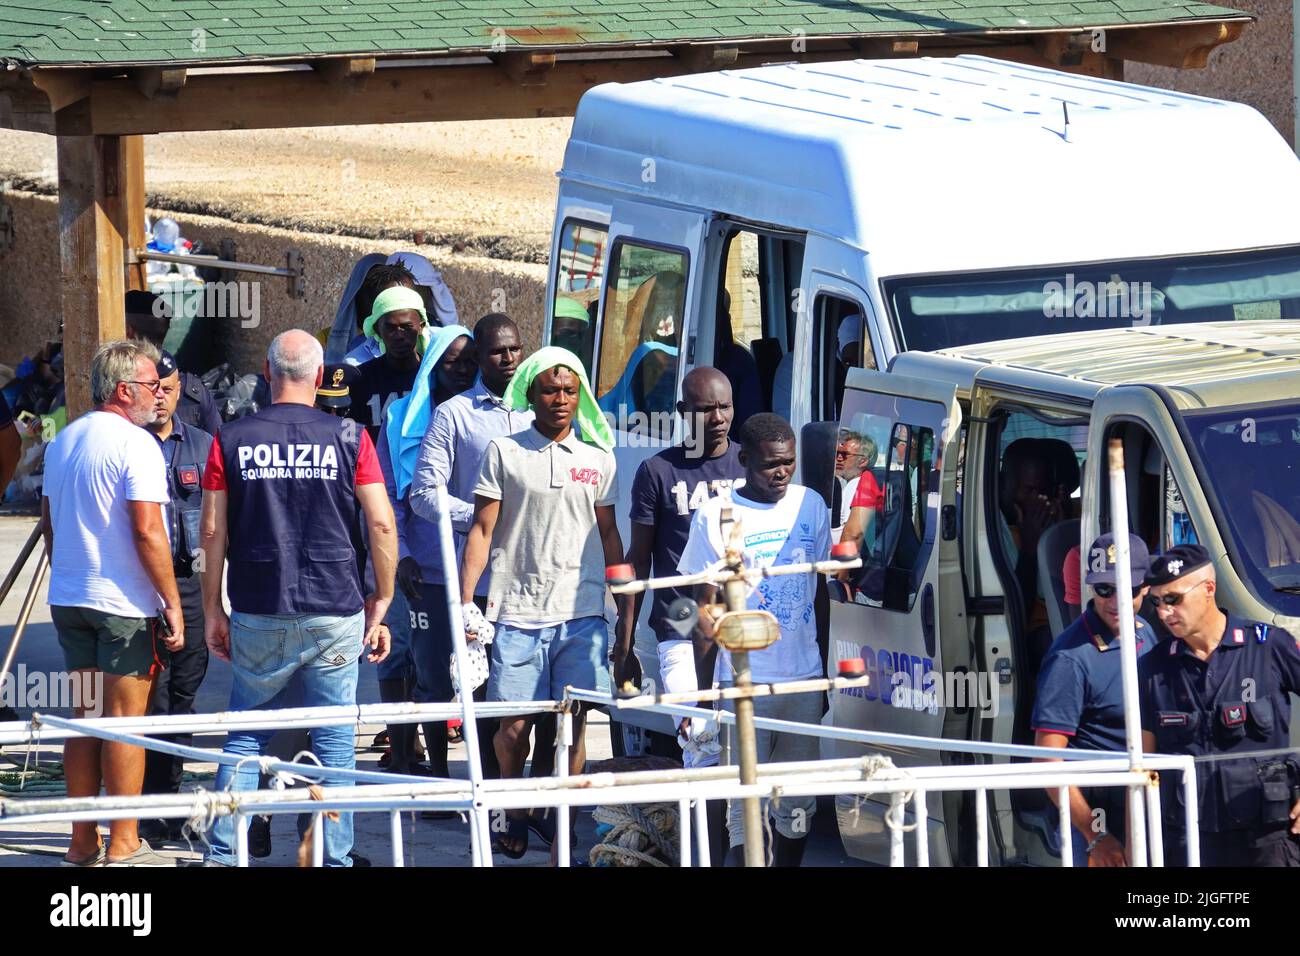 Illegale Einwanderer aus Afrika, die von Küstenwache gerettet wurden, kommen im Hafen an. Lampedusa, Italien - September 2019 Stockfoto